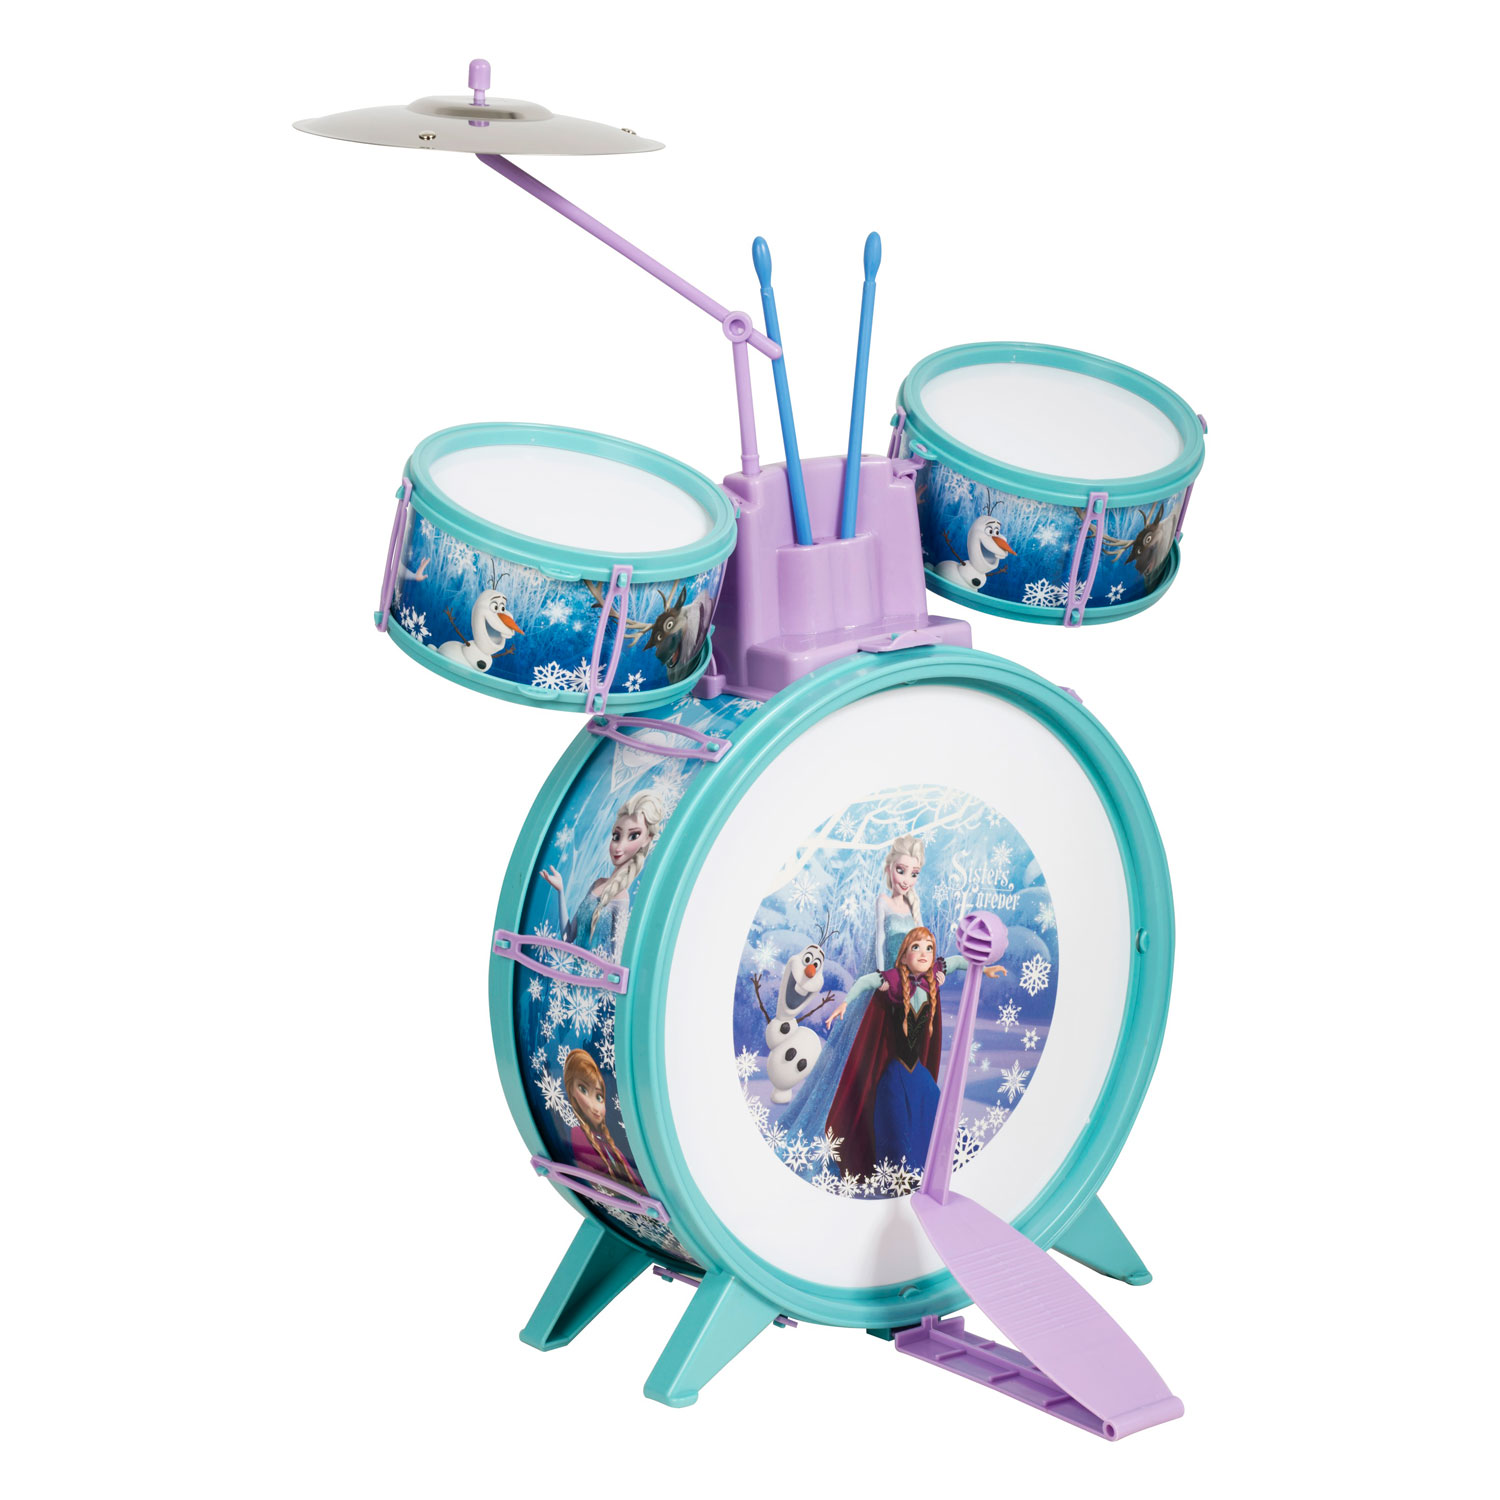 Beschuldiging fee repertoire Kinder Drumstel Disney Frozen | Thimble Toys